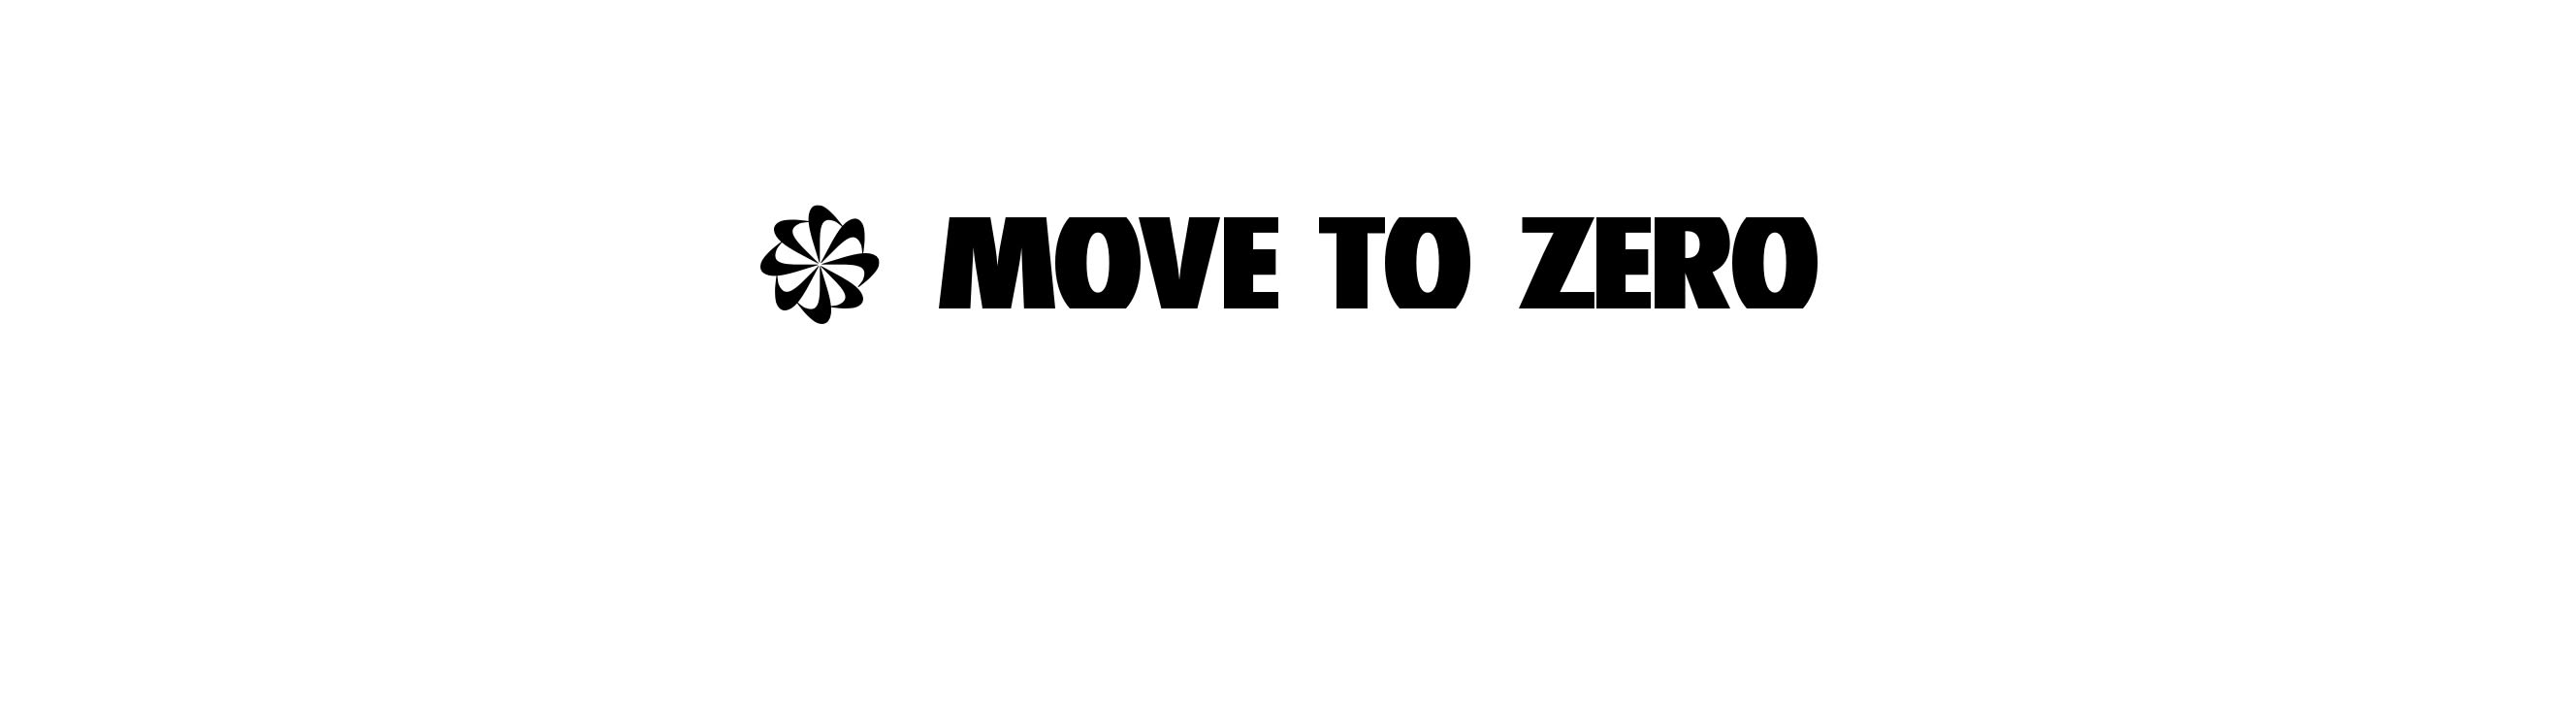 Move to Zero